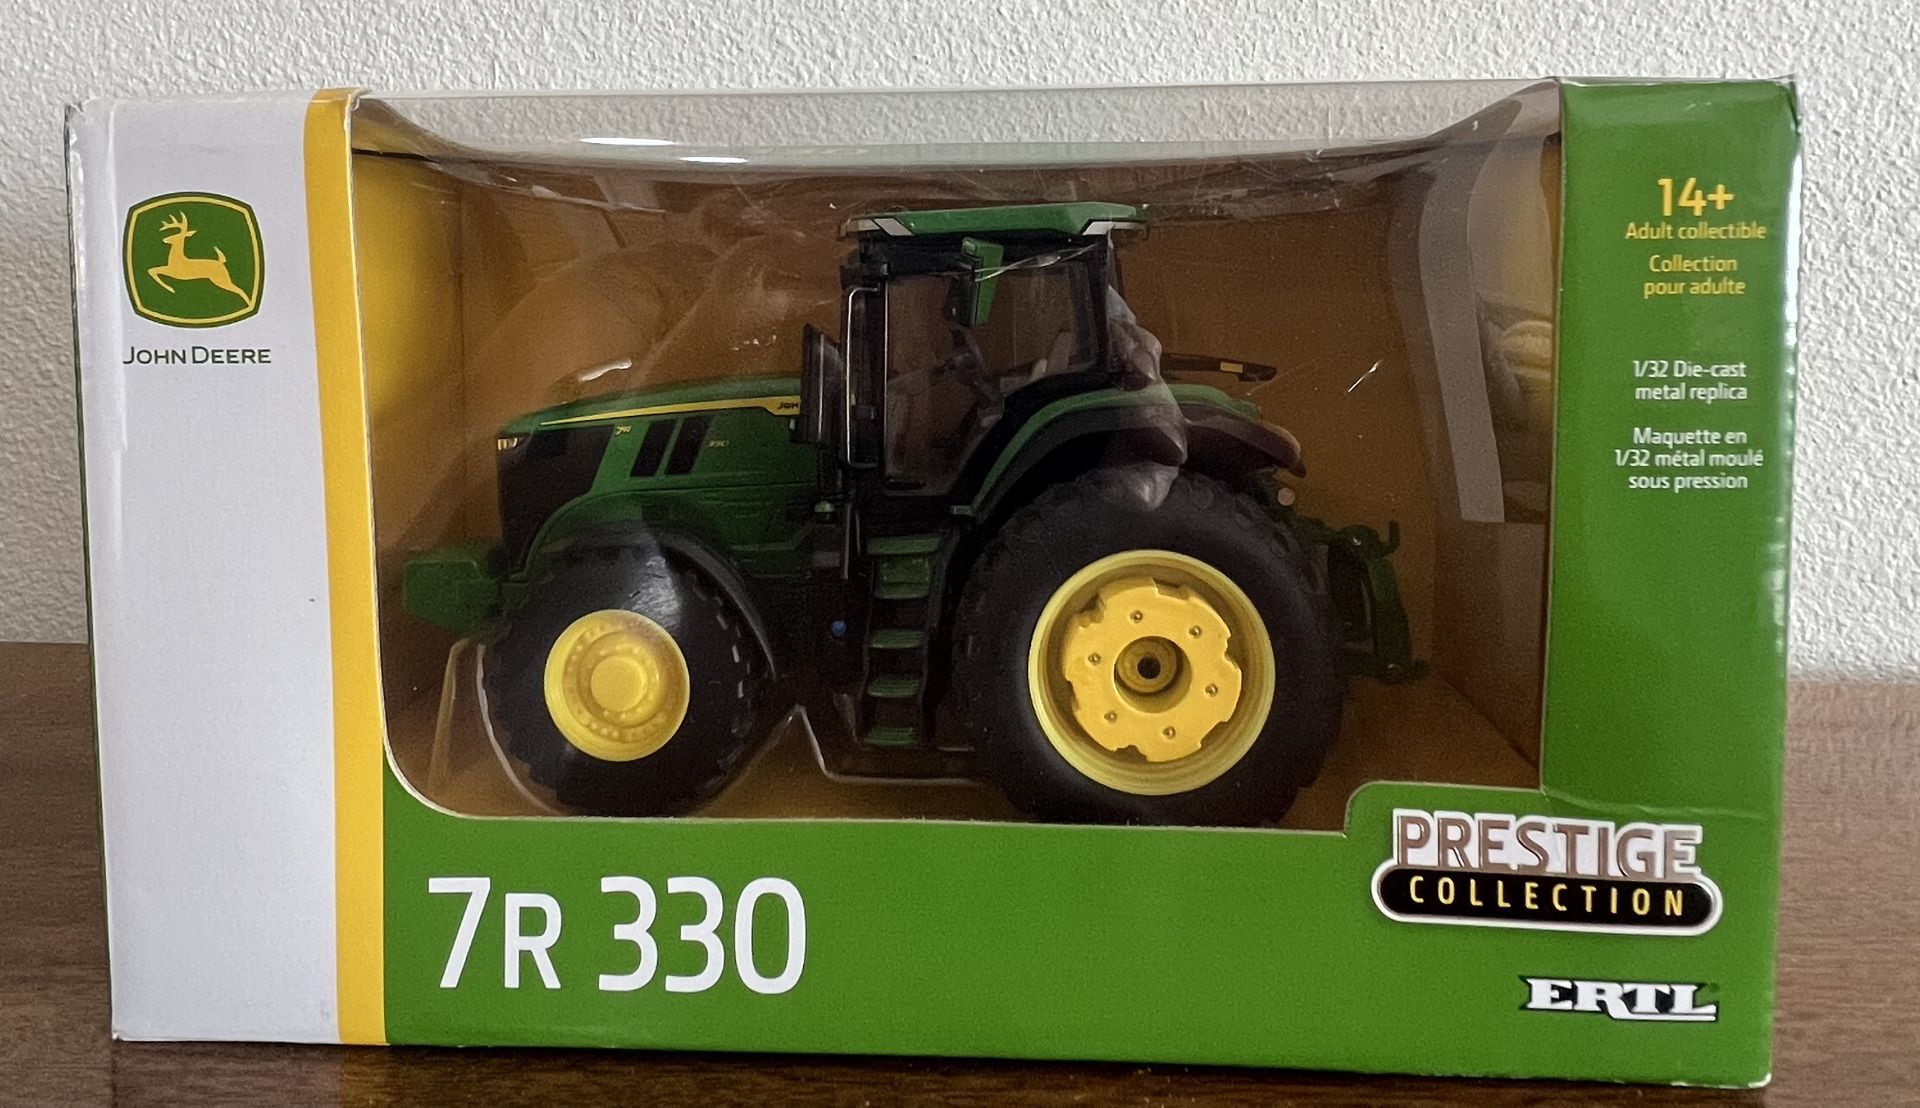 7R330 Prestige Collection ERTL  1/32 Die Cast John Deere Tractor